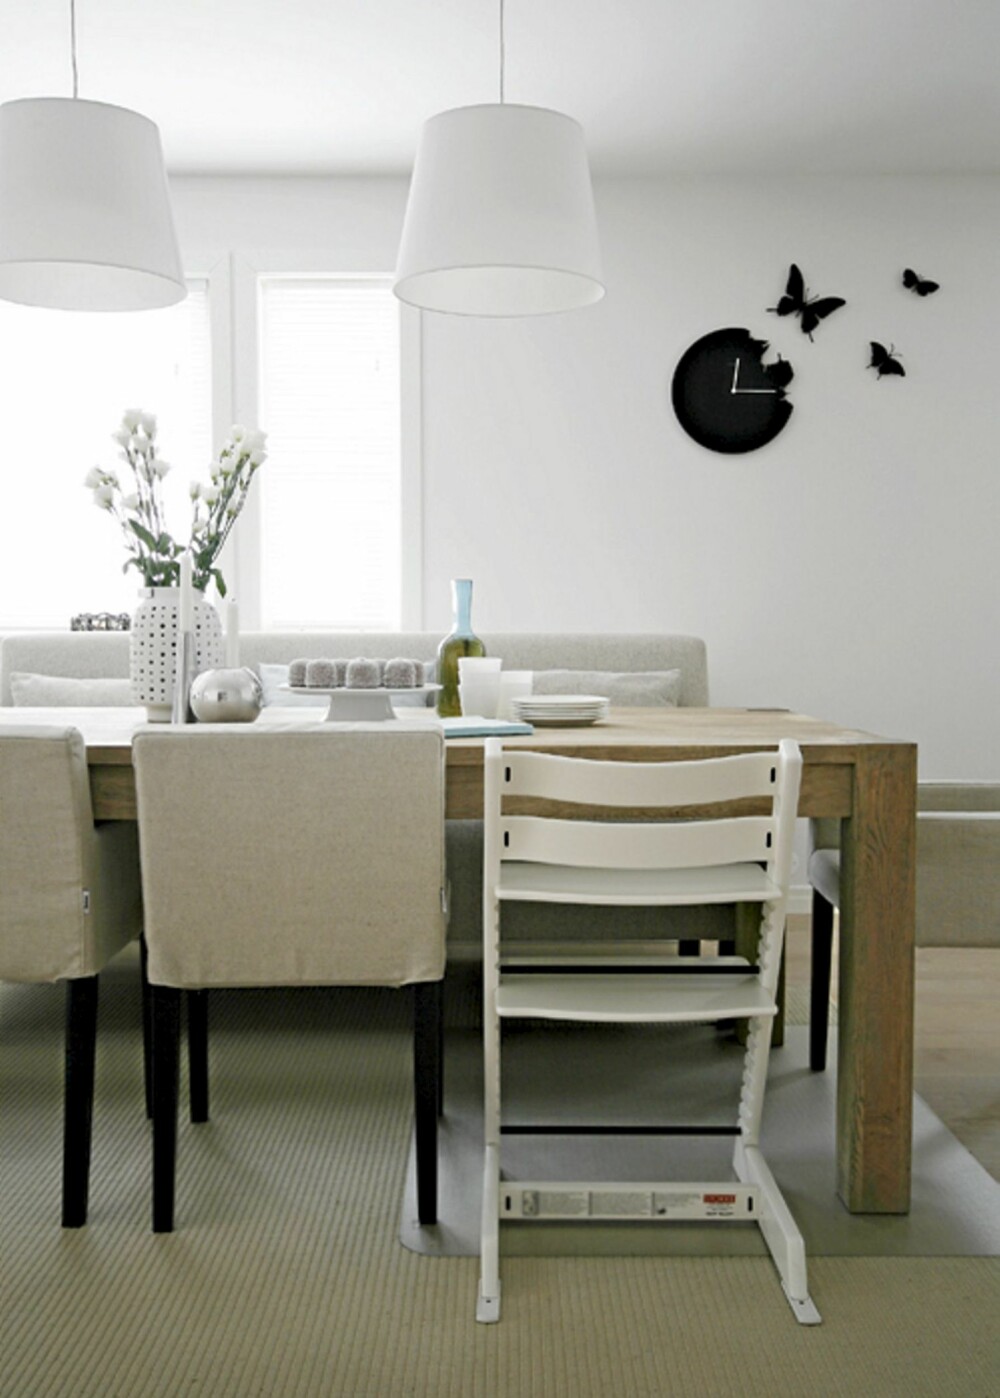 GRAFISK UTTRYKK: Rundt kjøkkenbordet troner Ikea stoler med spesialsydd trekk fra bemz.com. Den sorte sommerfuglklokken gir kjøkkenet et kult, grafisk uttrykk.